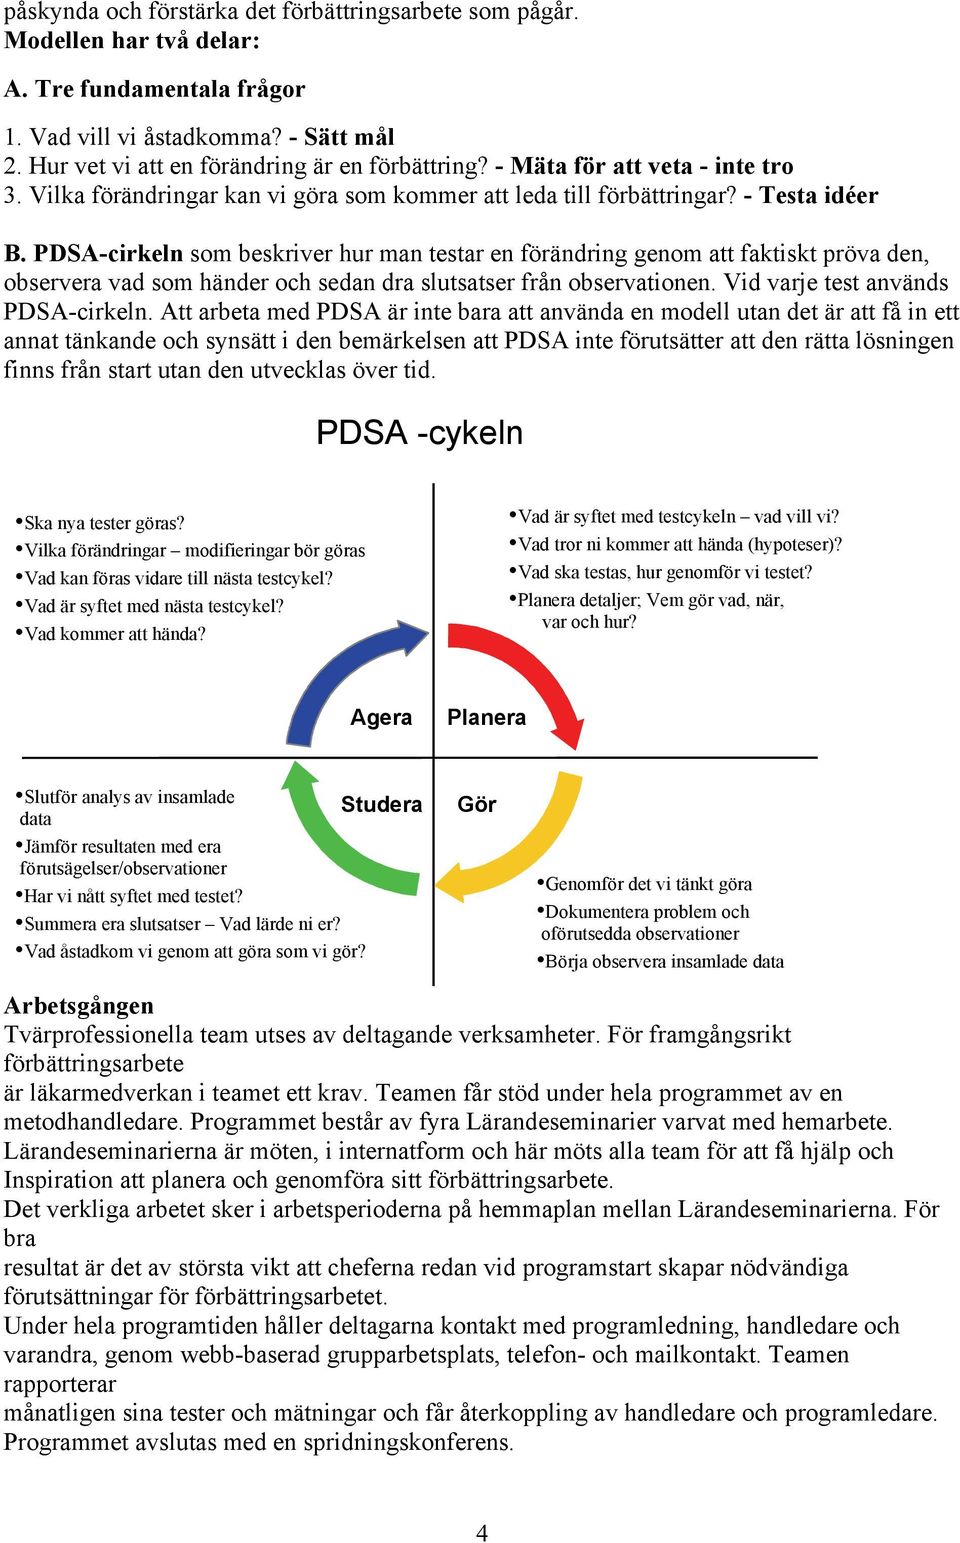 PDSA-cirkeln som beskriver hur man testar en förändring genom att faktiskt pröva den, observera vad som händer och sedan dra slutsatser från observationen. Vid varje test används PDSA-cirkeln.